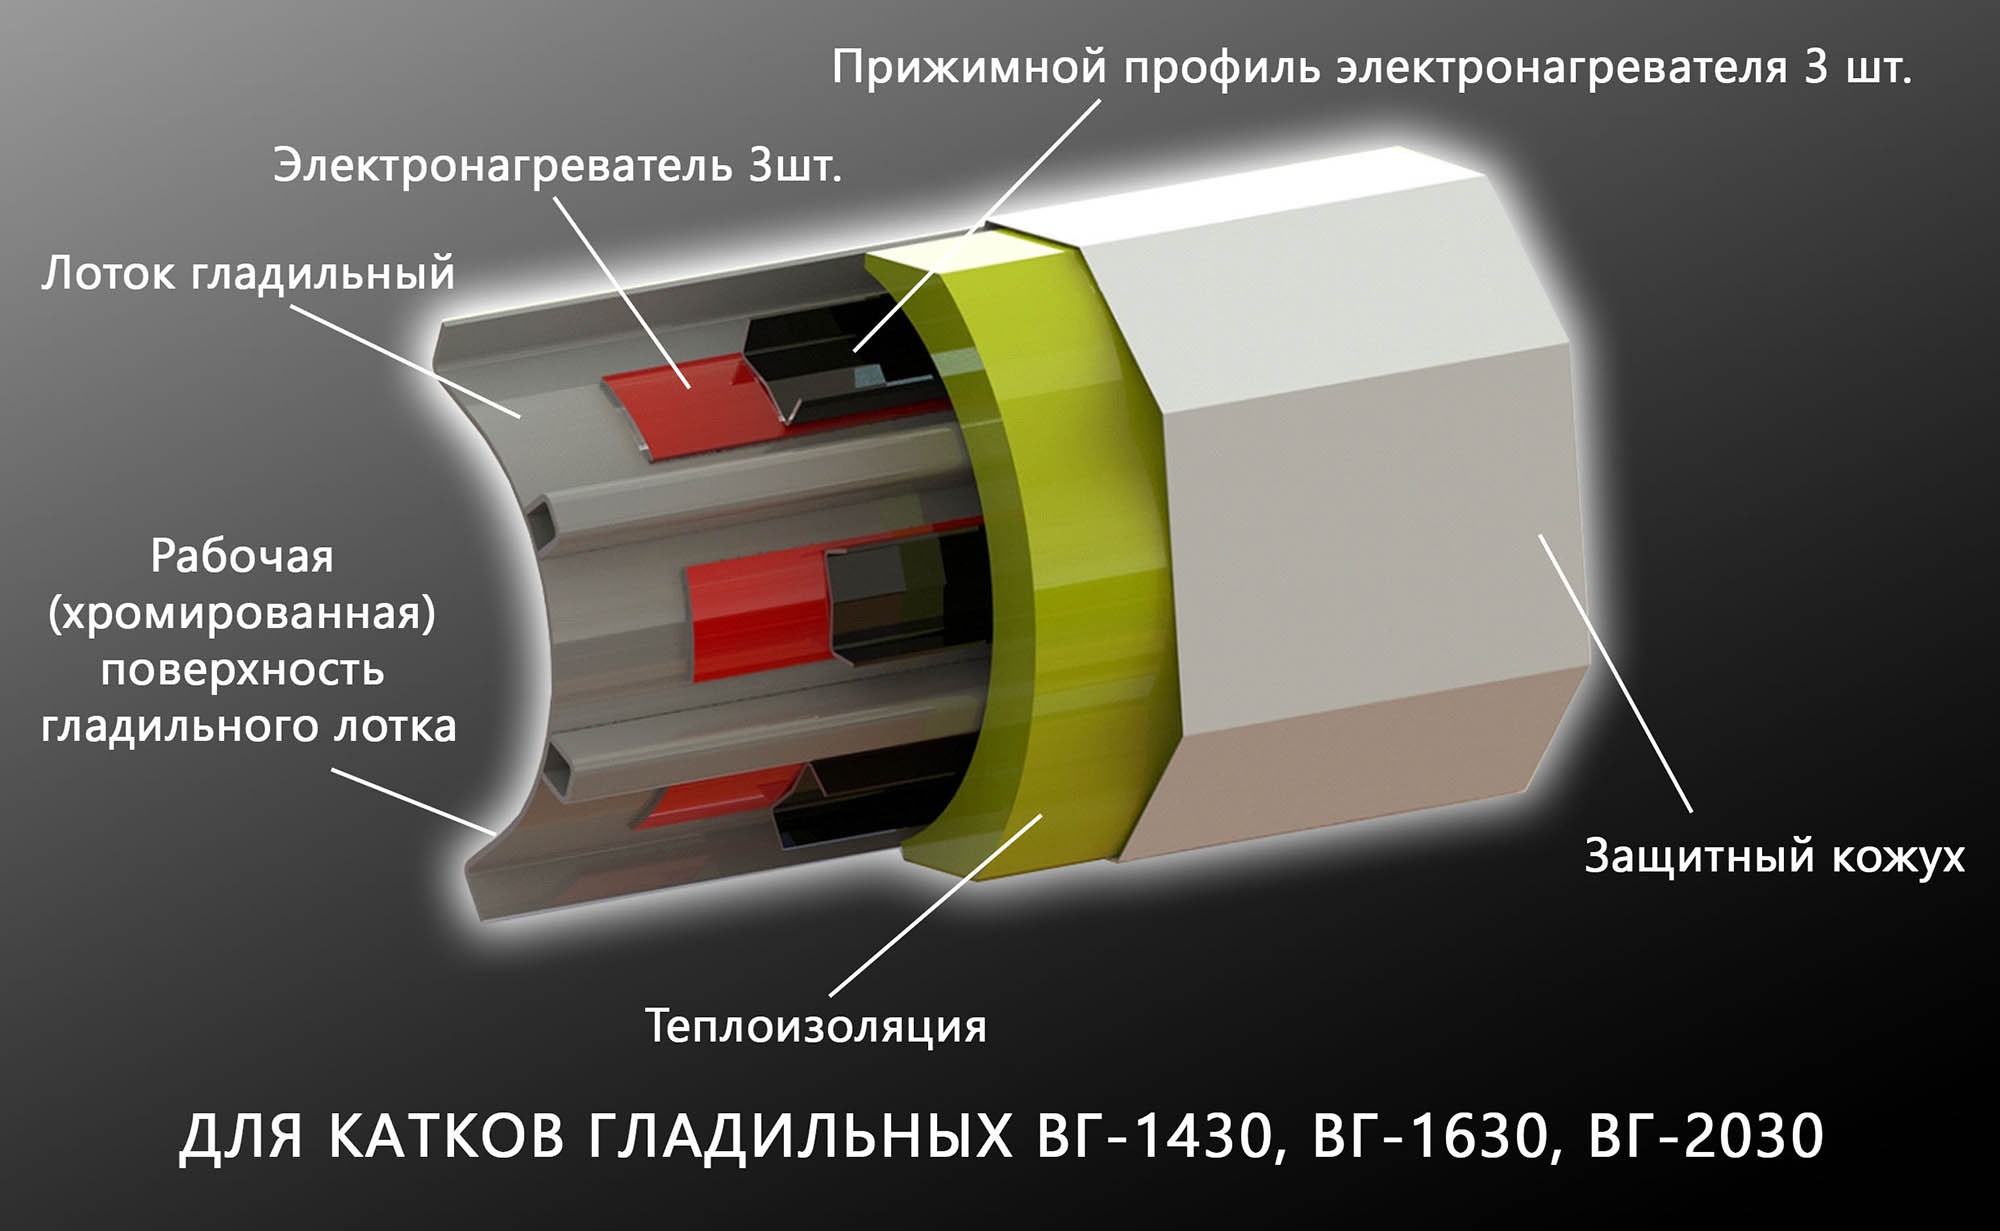 Каток гладильный ВГ-1430 (ВГ-1430.2231)